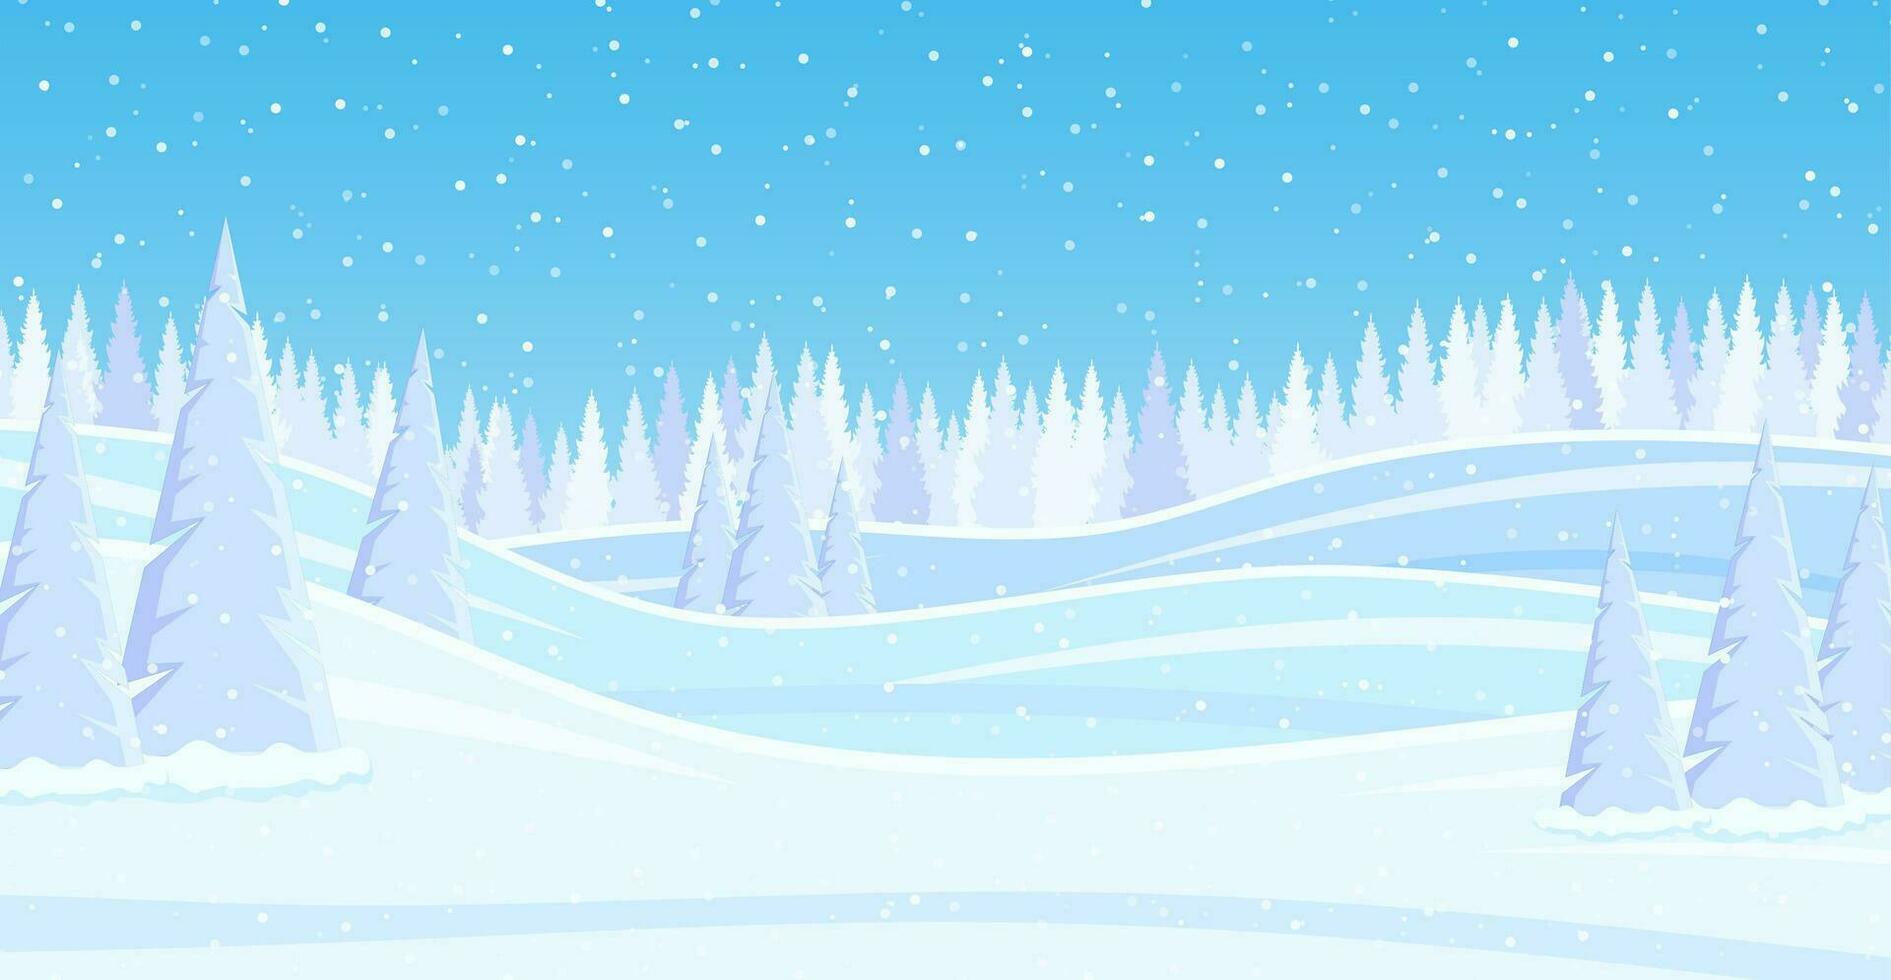 Navidad paisaje antecedentes con nieve y árbol. alegre Navidad día festivo. nuevo año y Navidad celebracion. vector ilustración en plano estilo